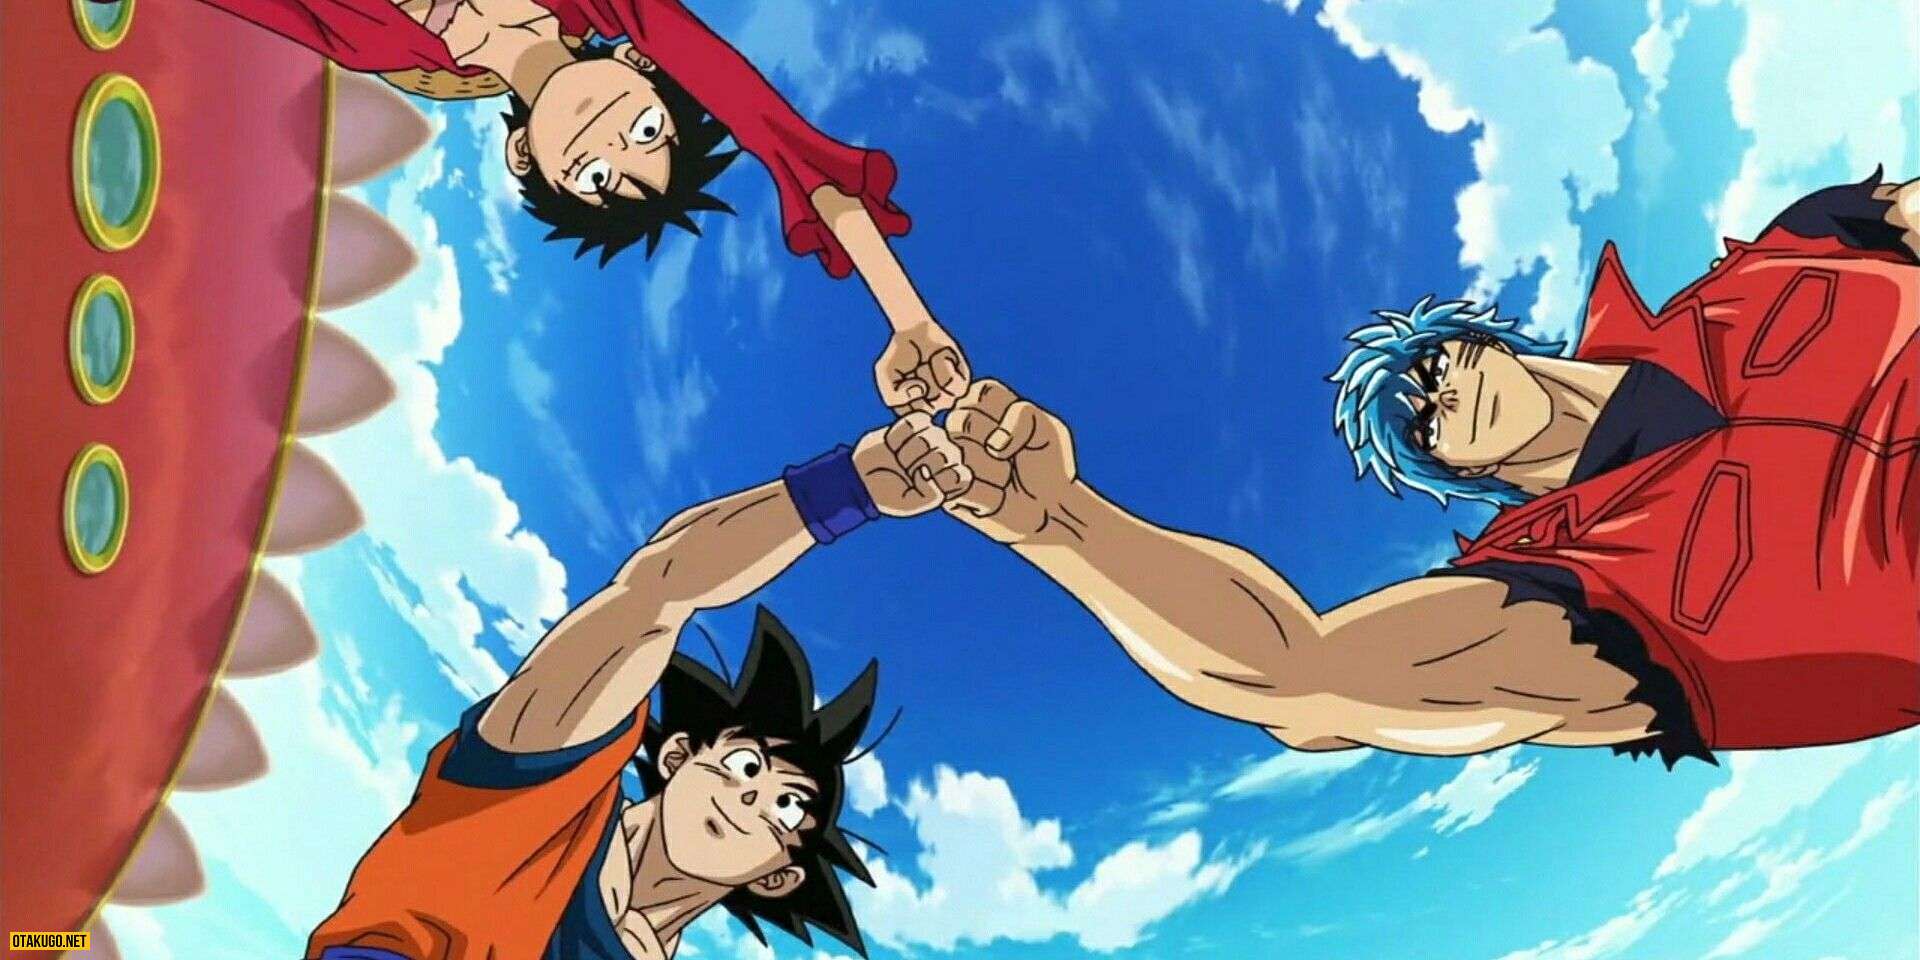 Tai sao Toriko x One Piece x DBZ Anime Crossover